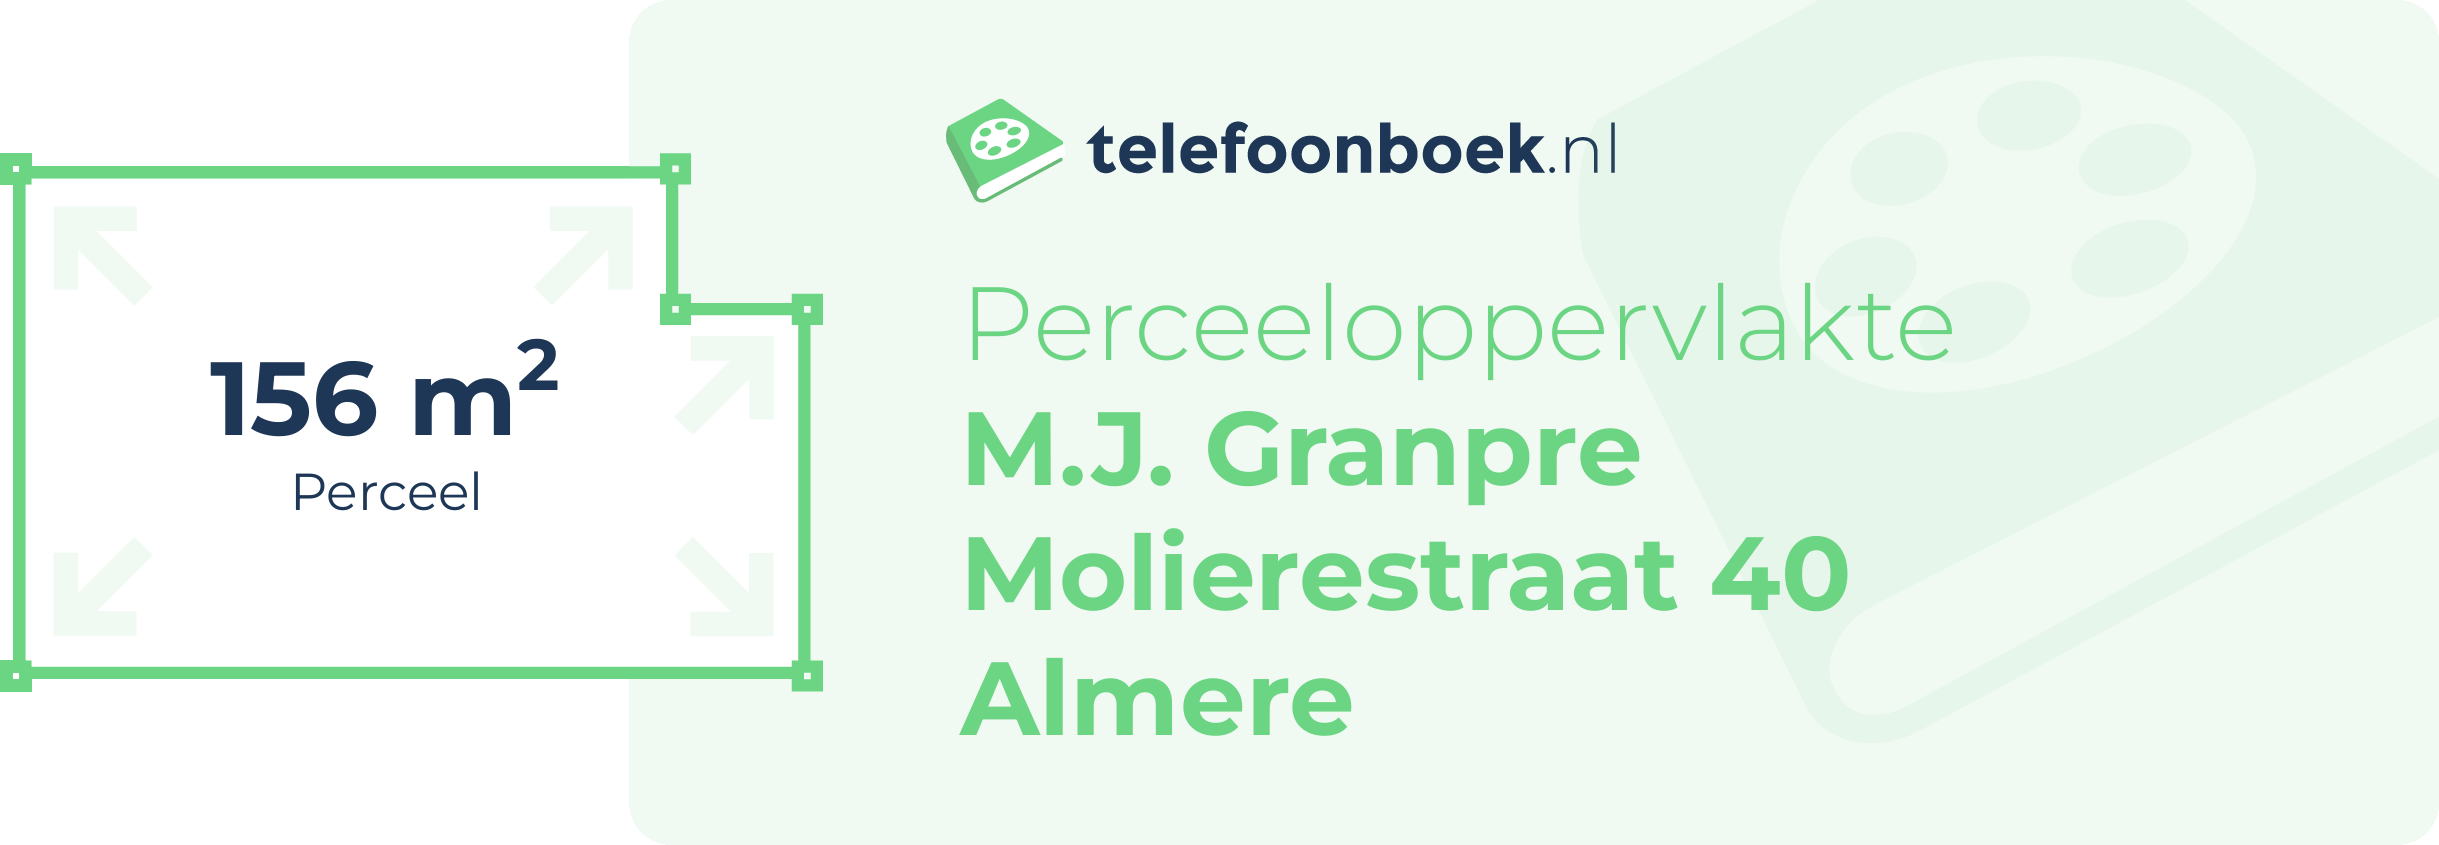 Perceeloppervlakte M.J. Granpre Molierestraat 40 Almere